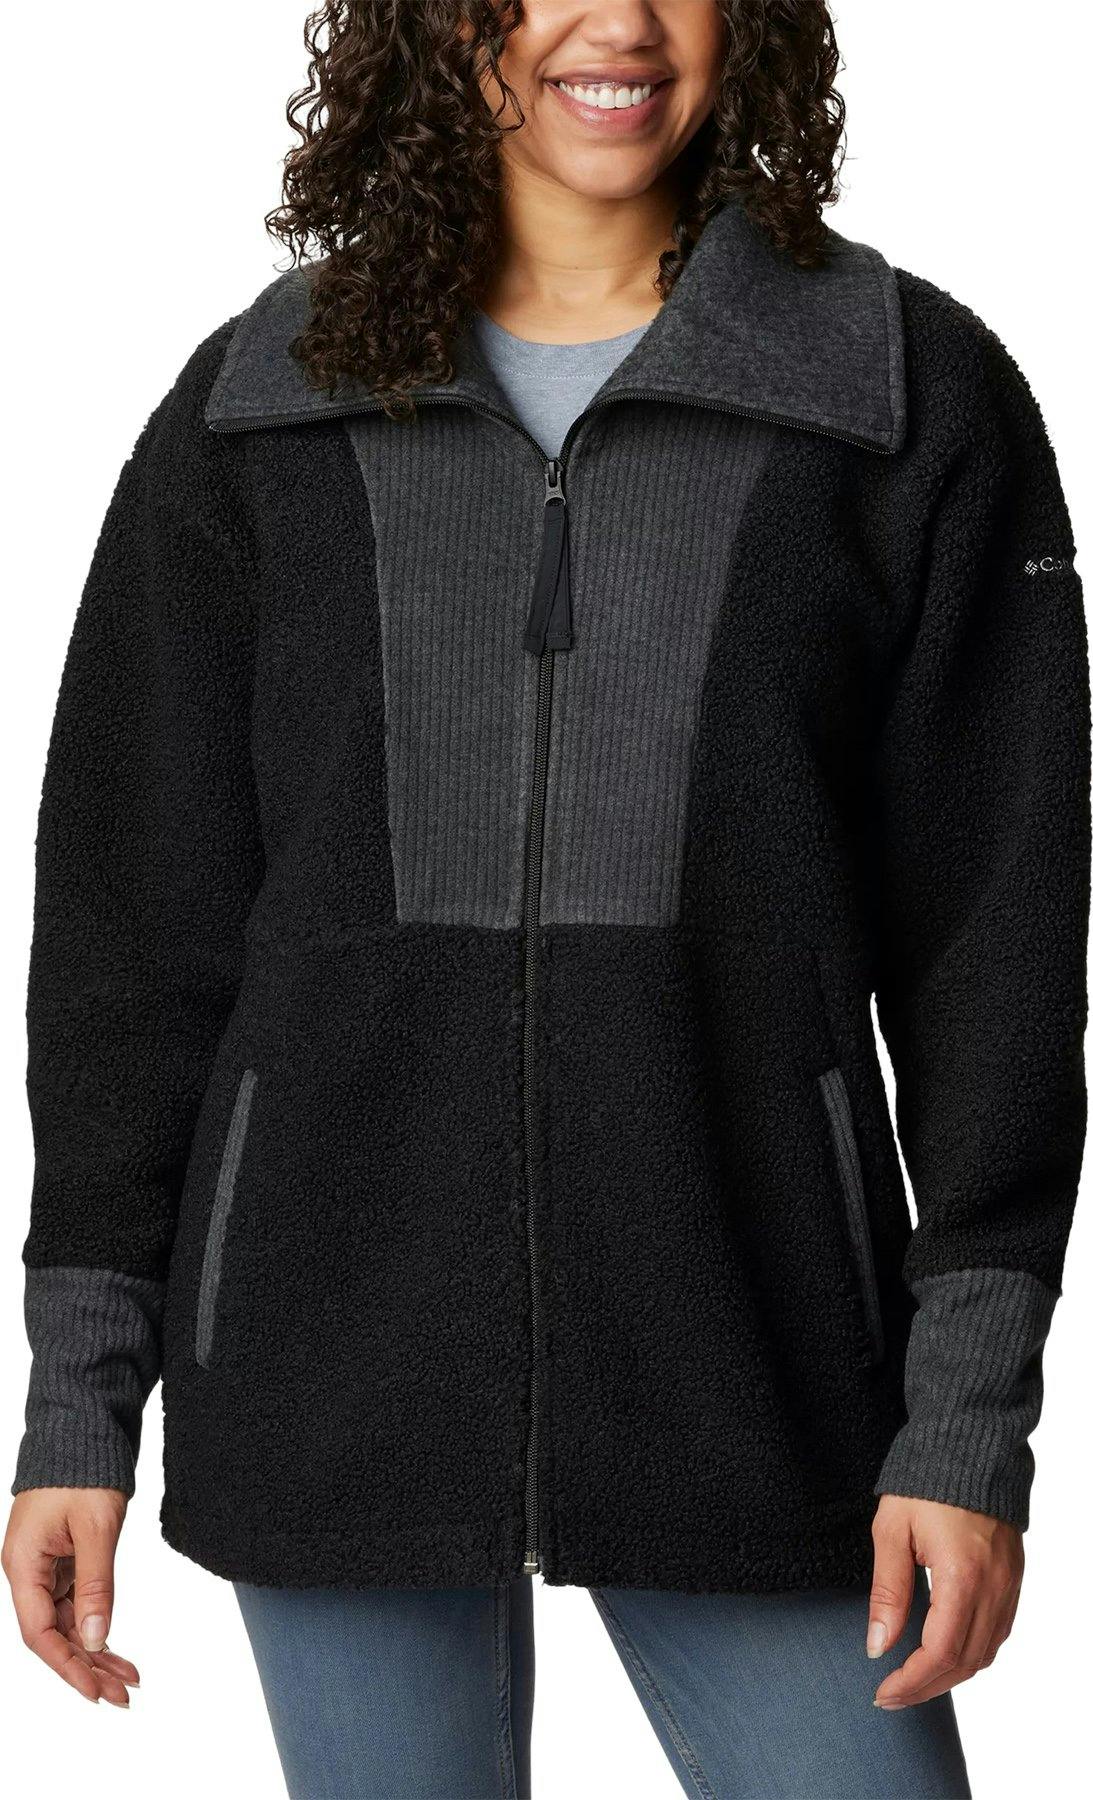 Product image for Boundless Trek Full Zip Fleece Jacket - Women's